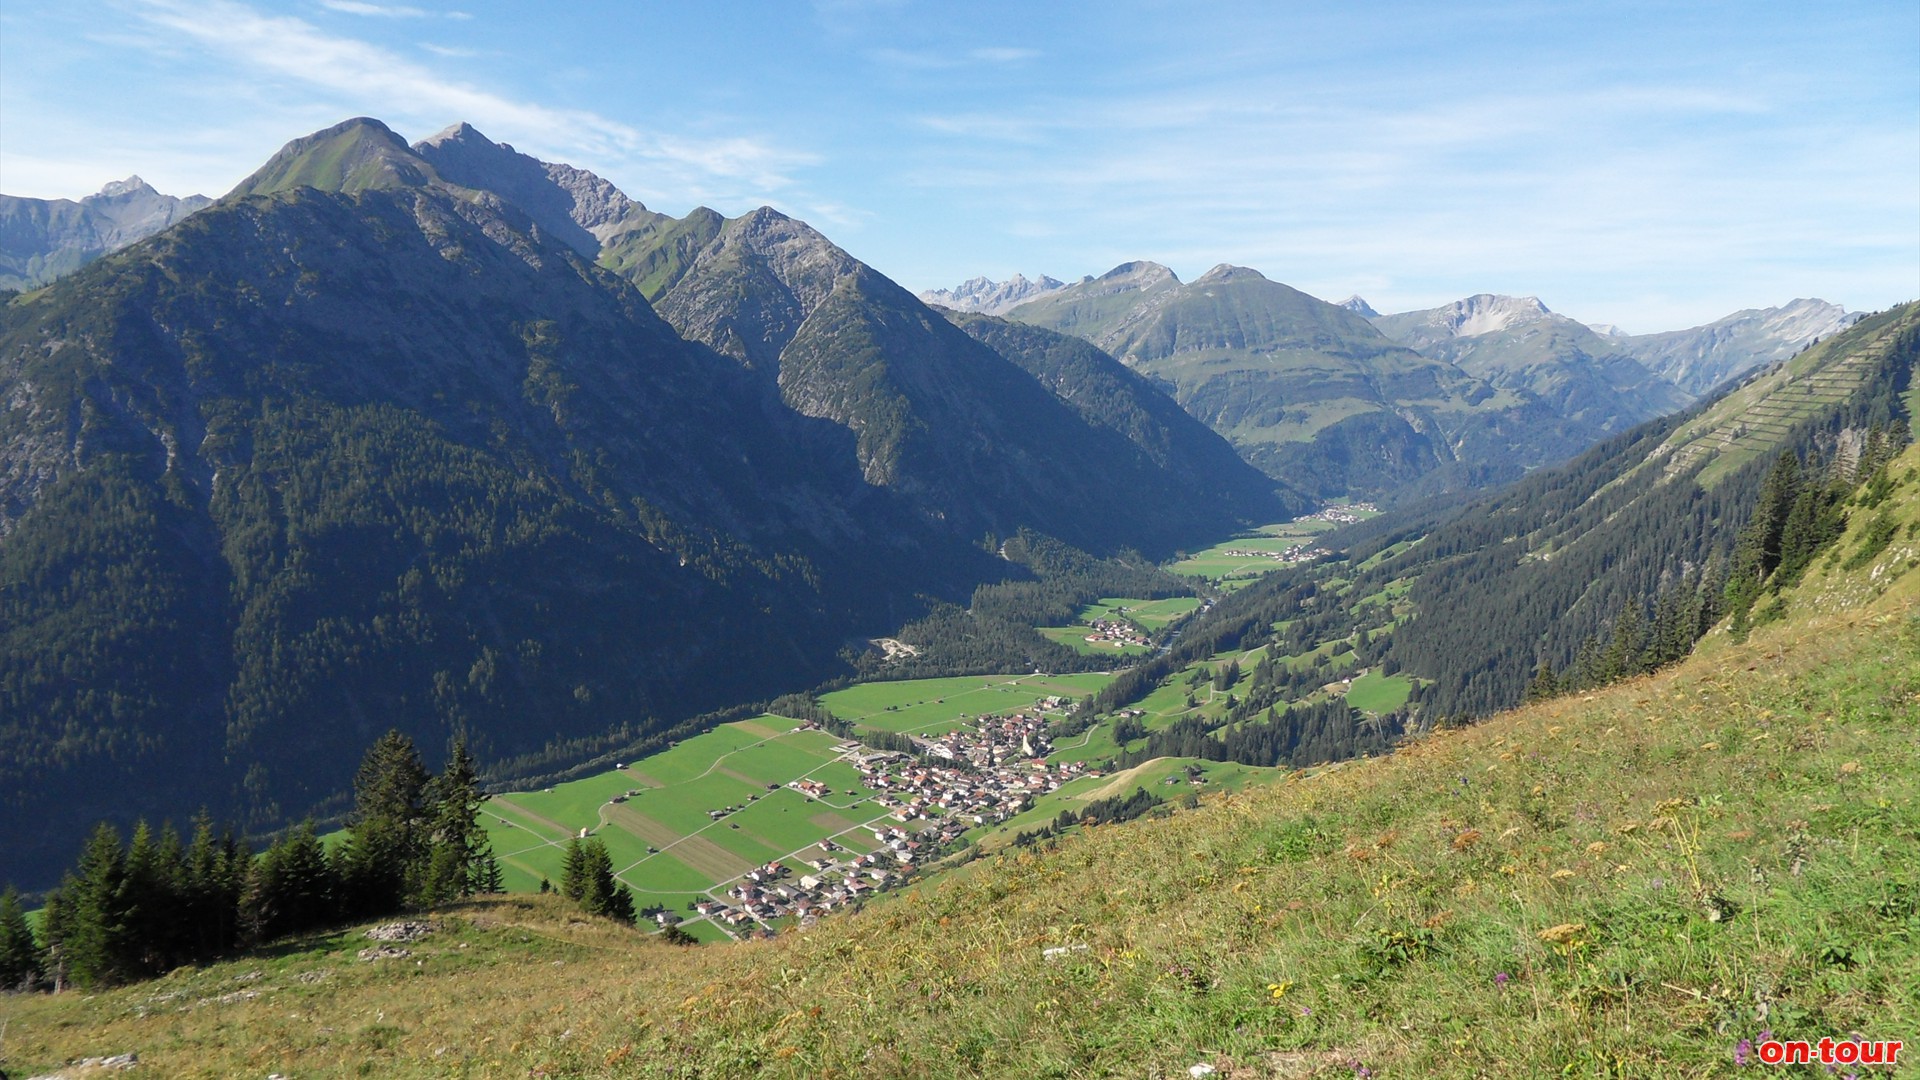 Tiefblick nach Holzgau im südwestlichen Lechtal.